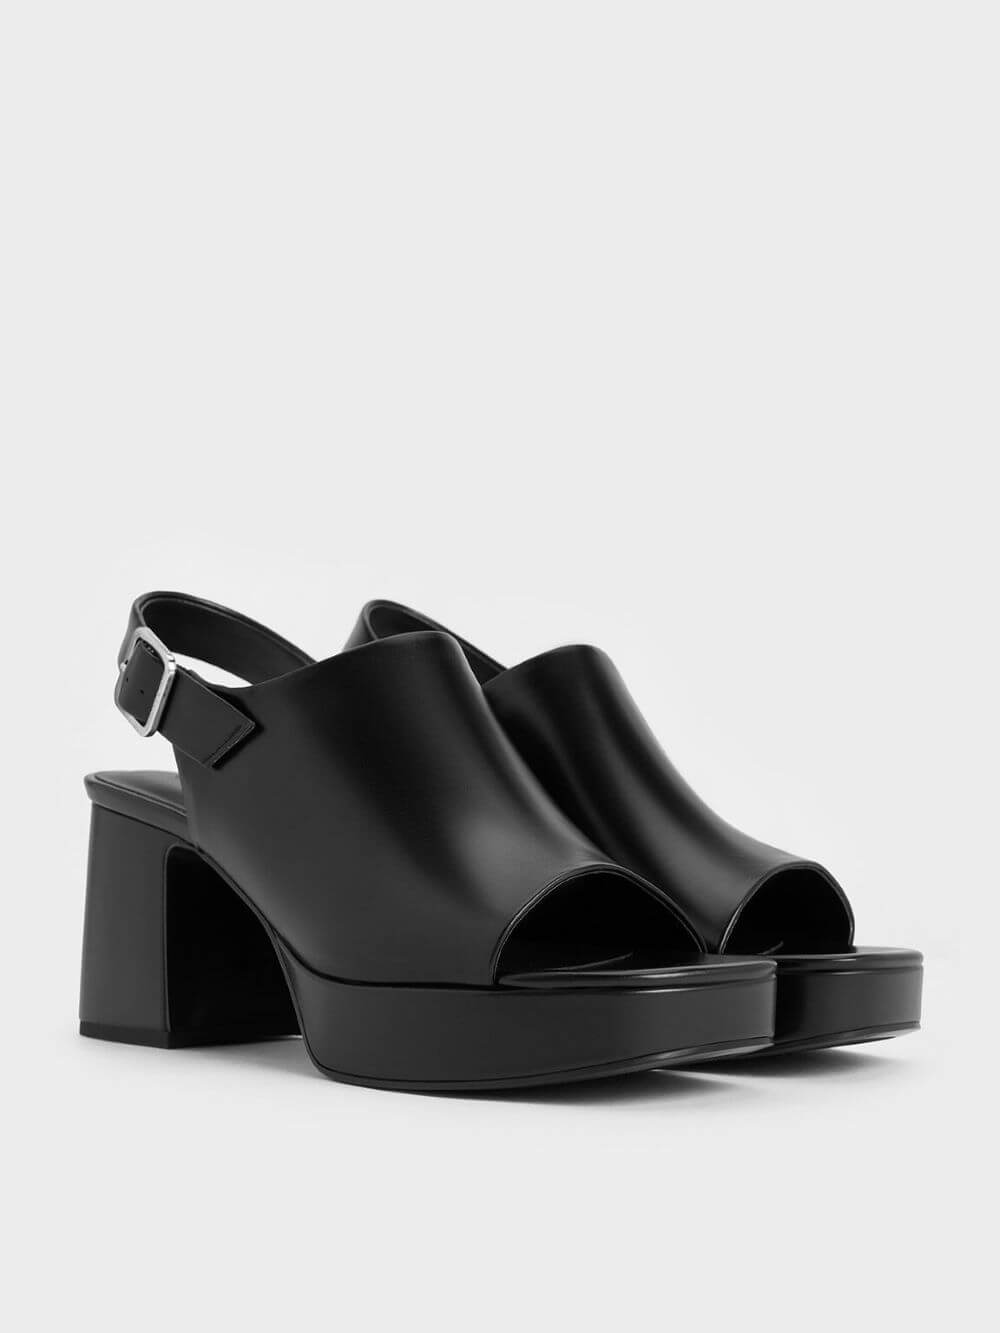 Women’s peep-toe platform sandals in black - CHARLES & KEITH